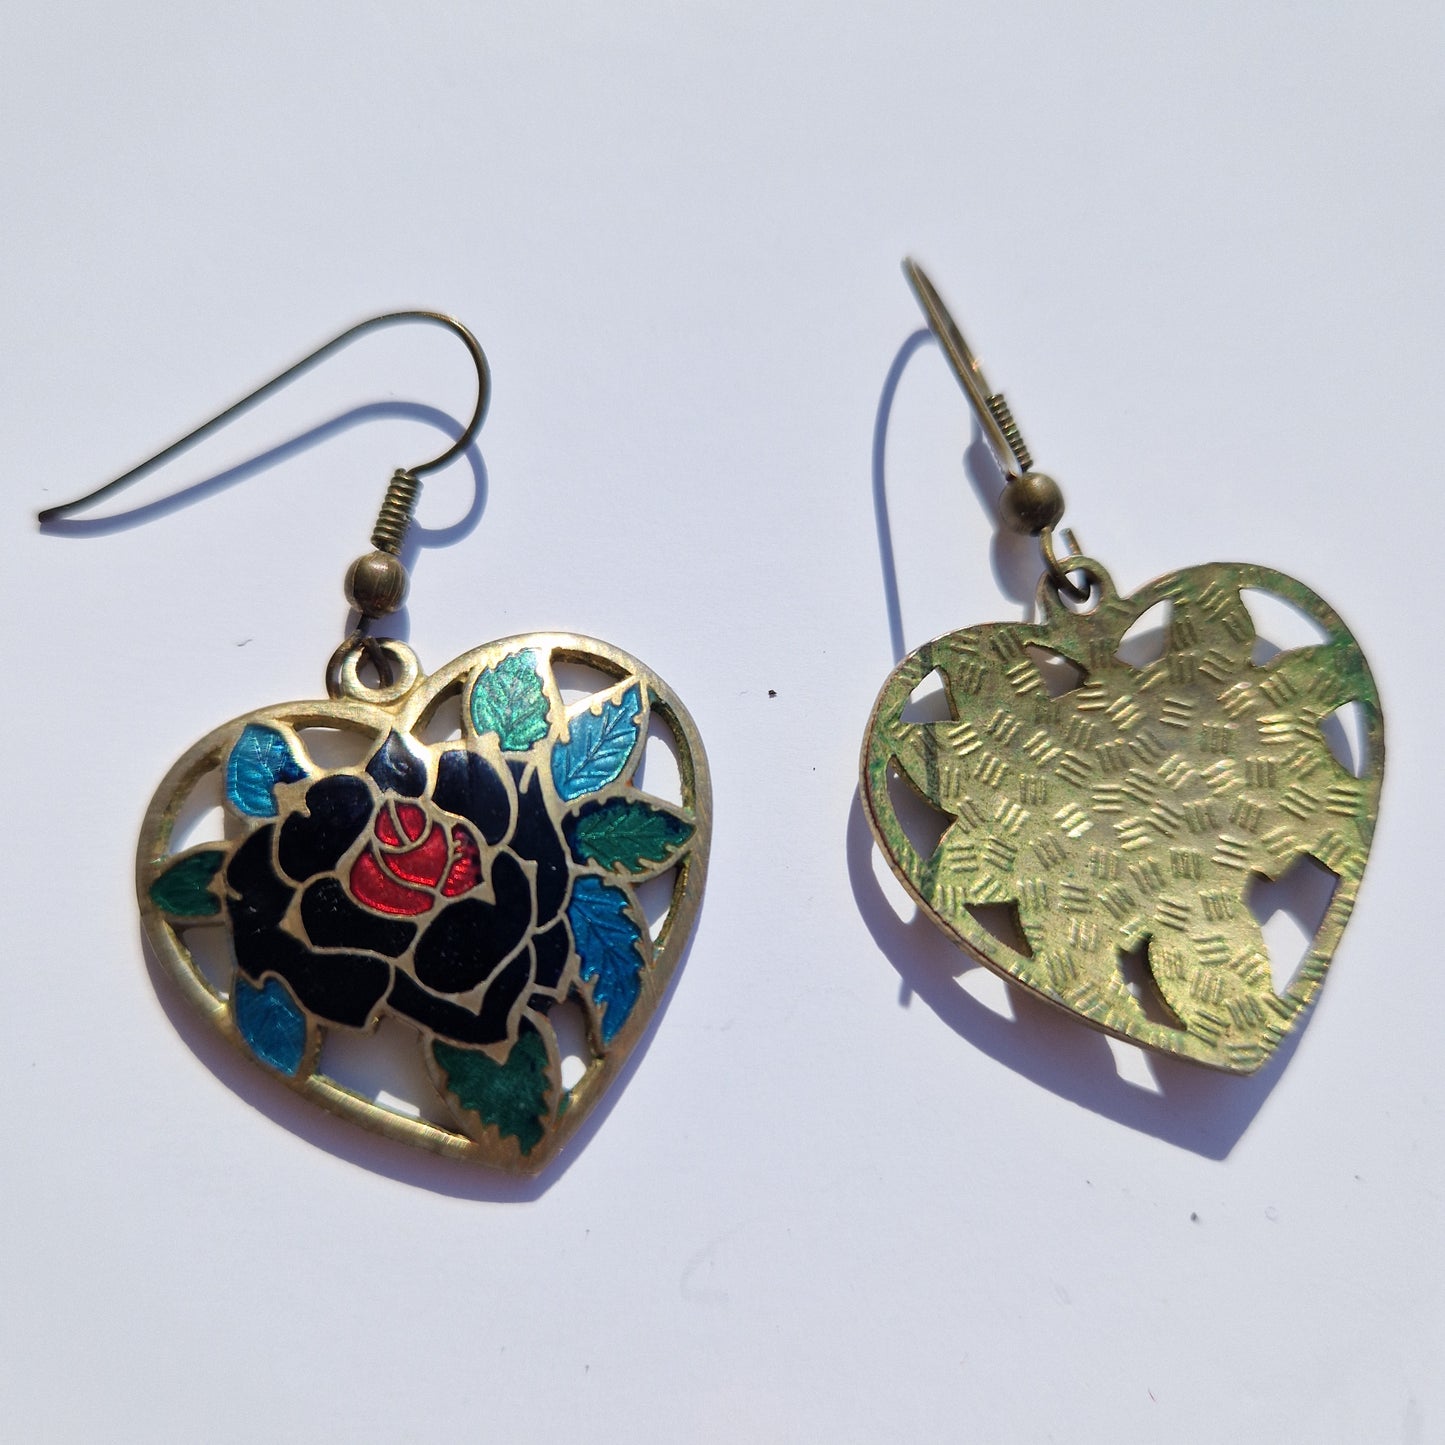 vintage drop earrings uk, cloisonne jewellery